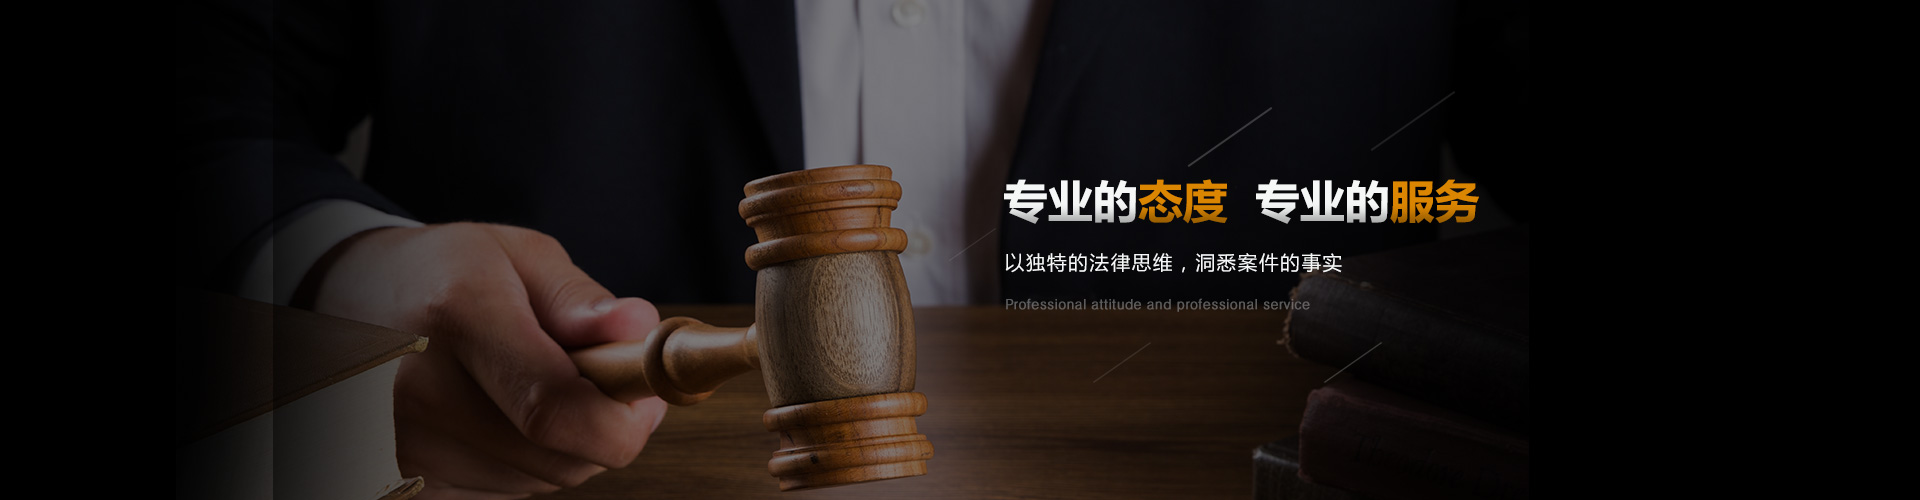 上海婚姻律师咨询联系13761477738 汤容滨律师